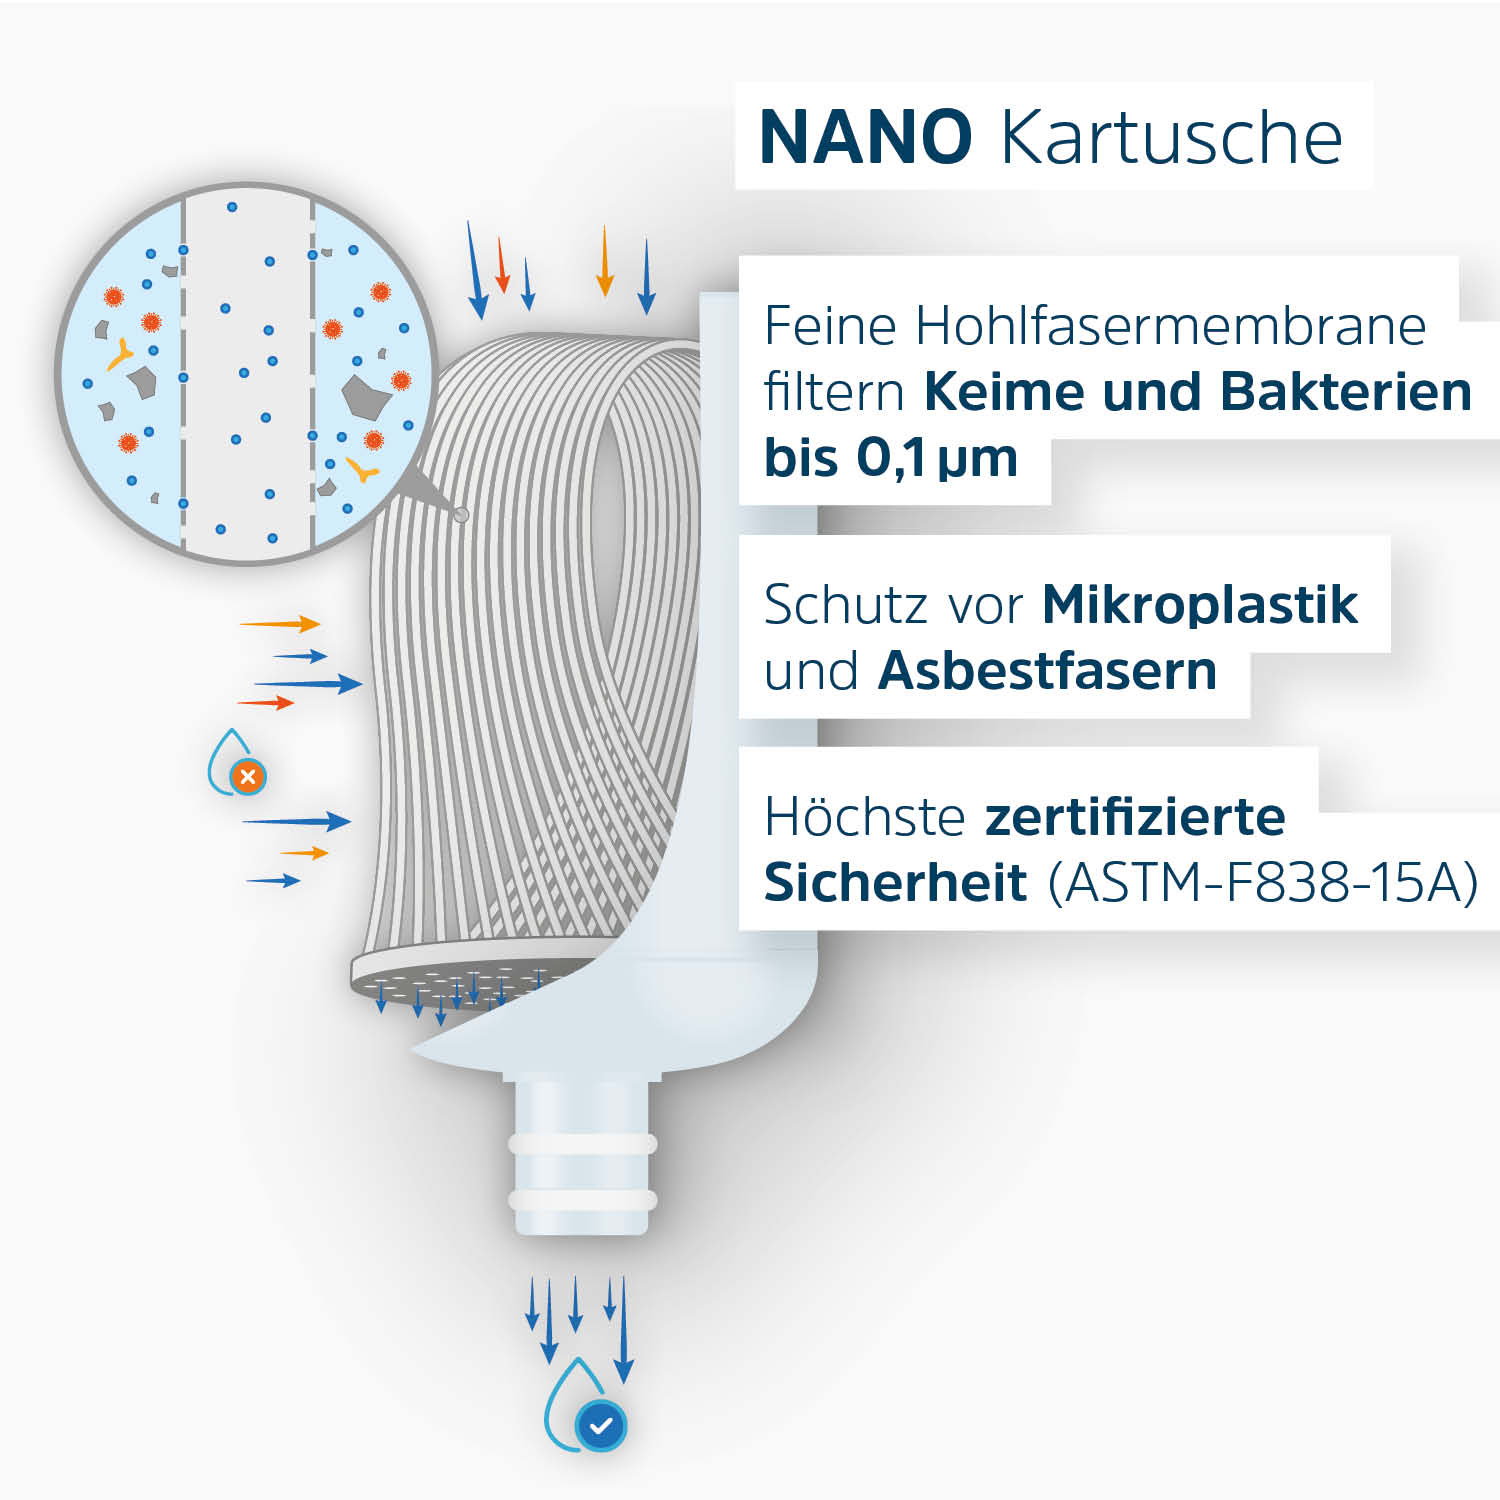 Schematische Darstellung Nano-Kartusche mit Beschreibung